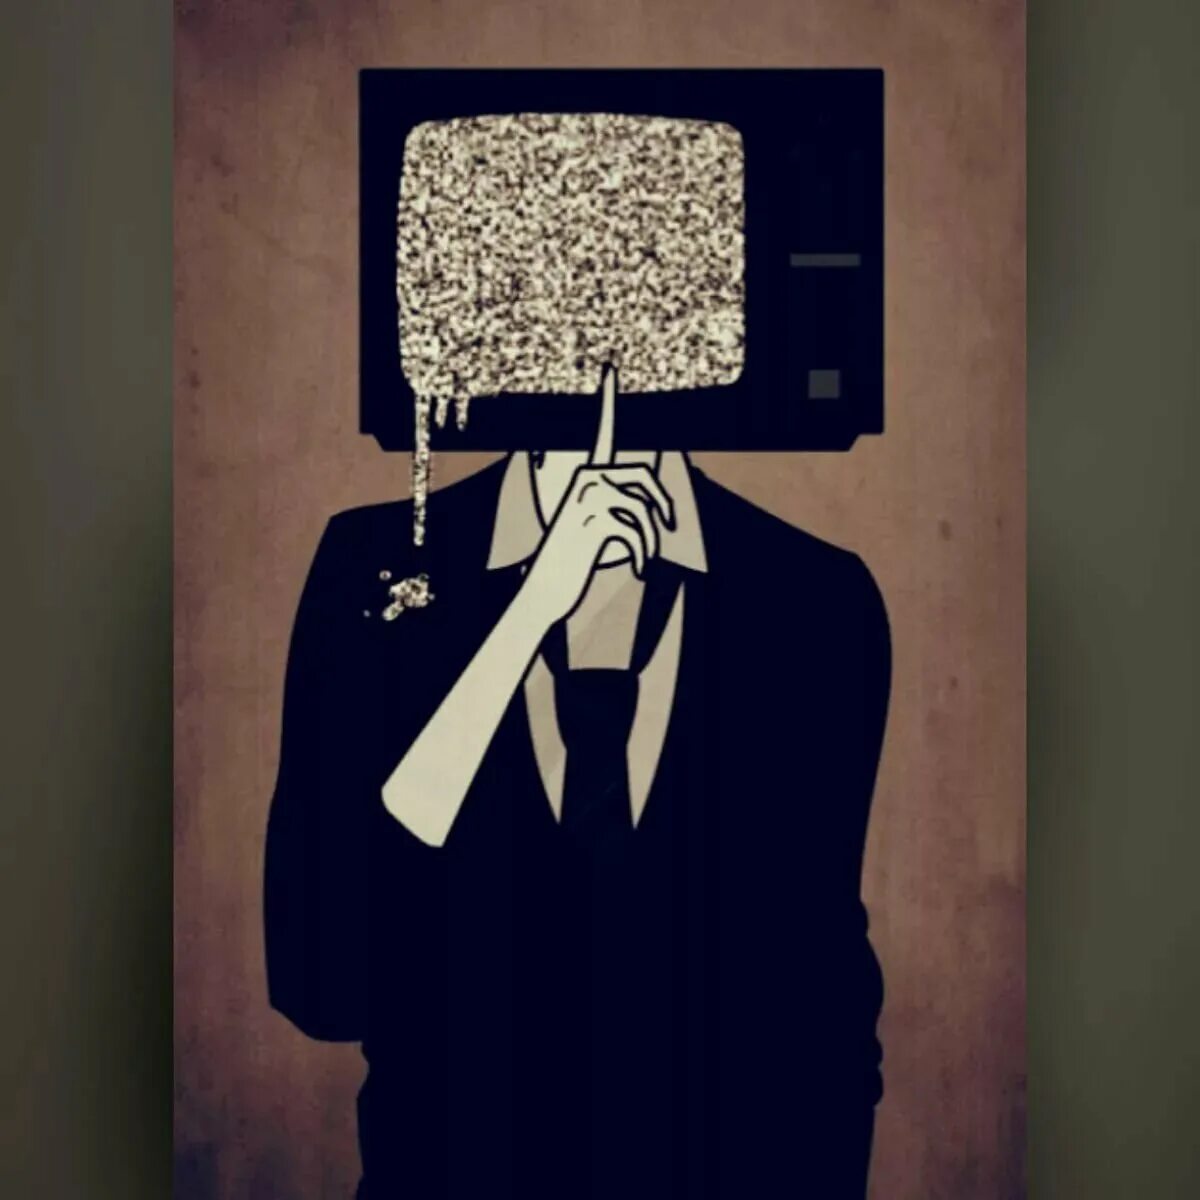 Аватарка тв. Телевизор вместо головы. Человек с головой телевизора. Человек с экраном вместо головы. Арты с телевизором на голове.